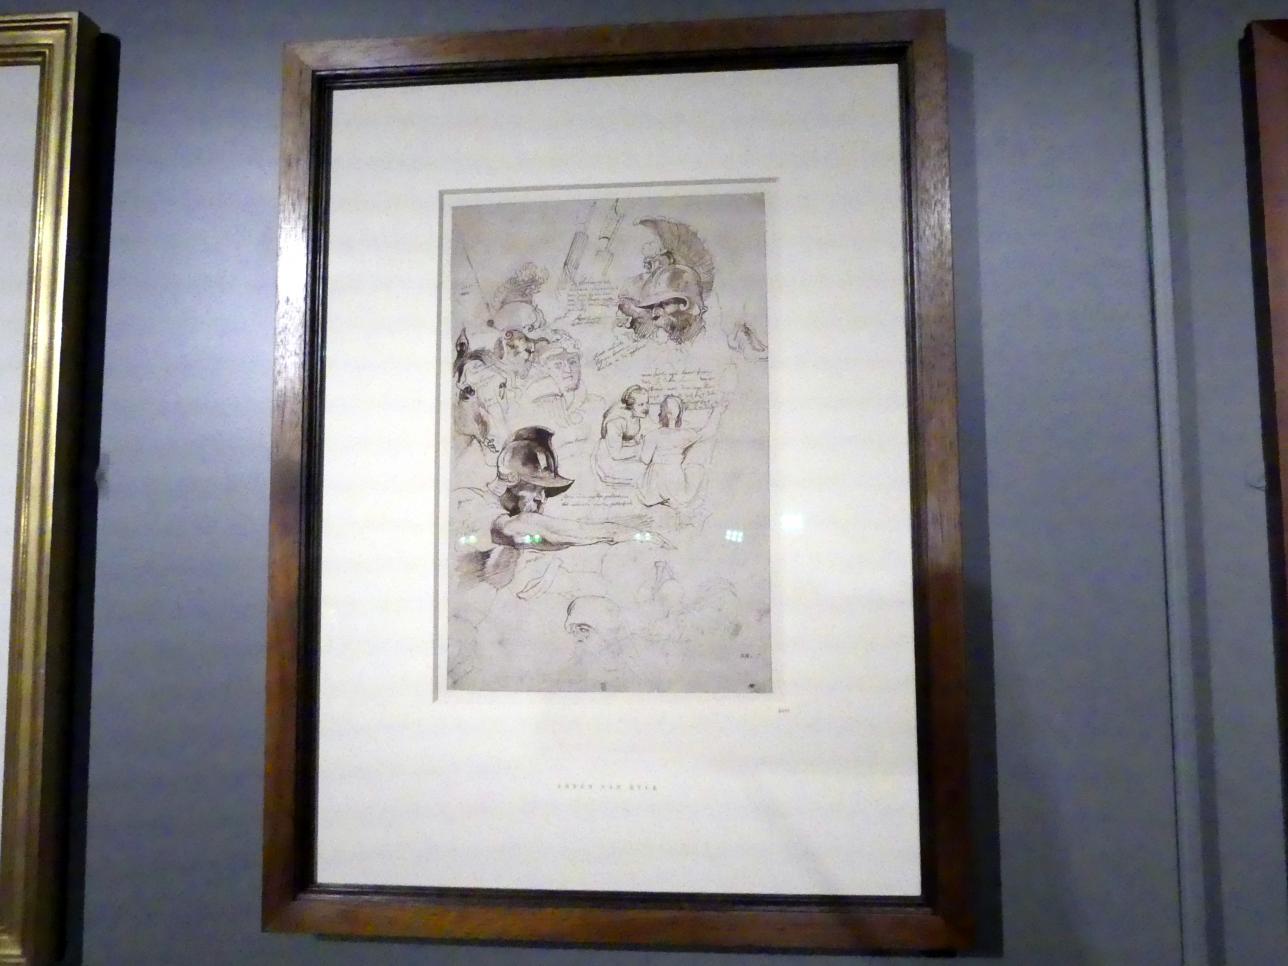 Anthonis (Anton) van Dyck (1614–1641), Studie nach dem "Martyrium des Heiligen Laurentius" von Peter Paul Rubens, München, Alte Pinakothek, Ausstellung "Van Dyck" vom 25.10.2019-02.02.2020, Von Antwerpen nach Italien - 1, um 1616, Bild 2/3